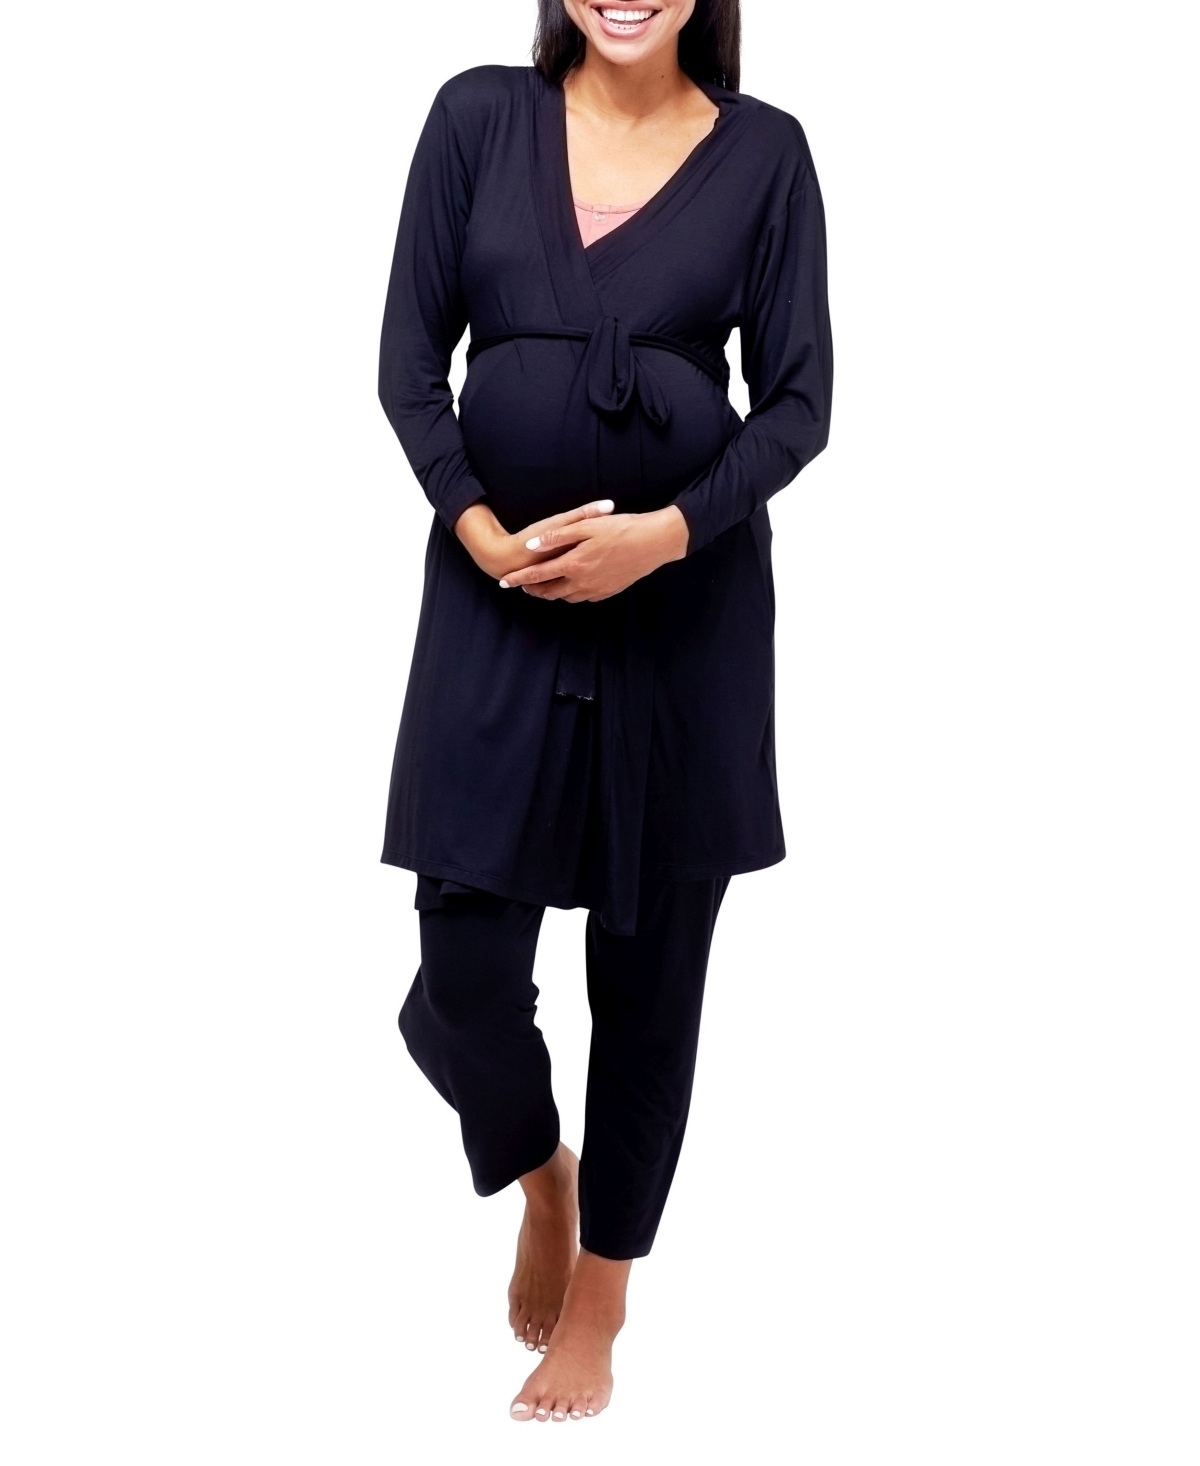 Second Skin Maternity Robe - Black